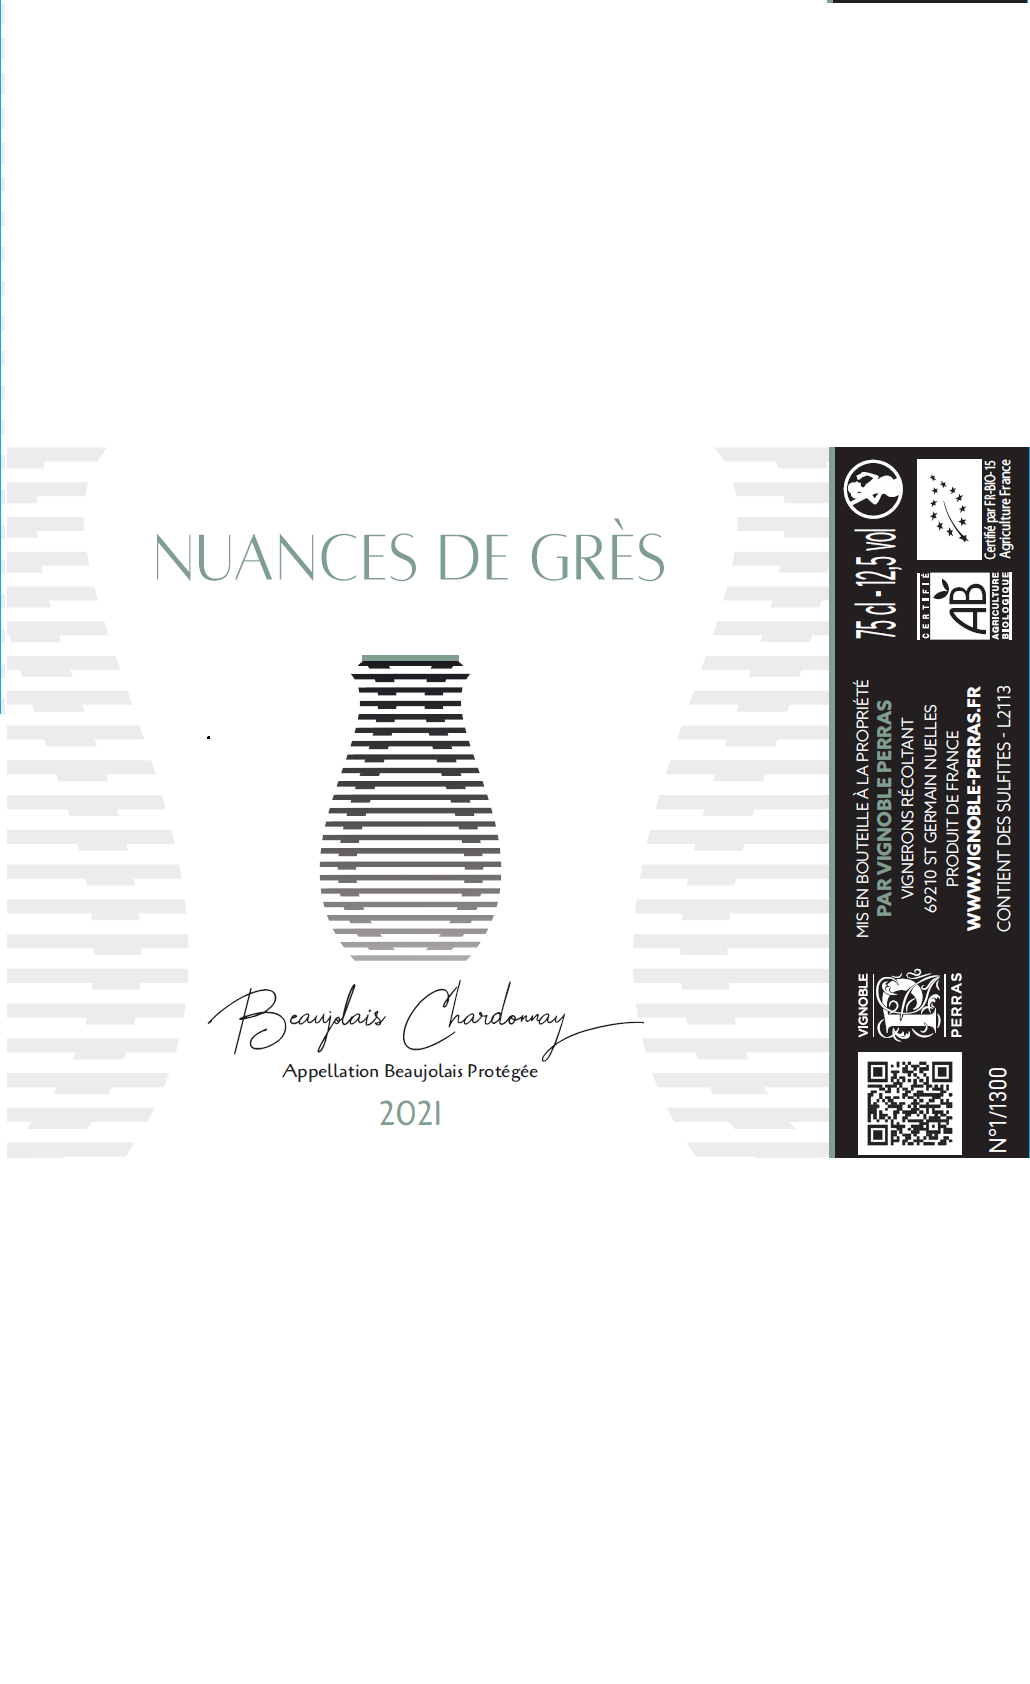 Beaujolais Nuances de Grès Blanc 2021